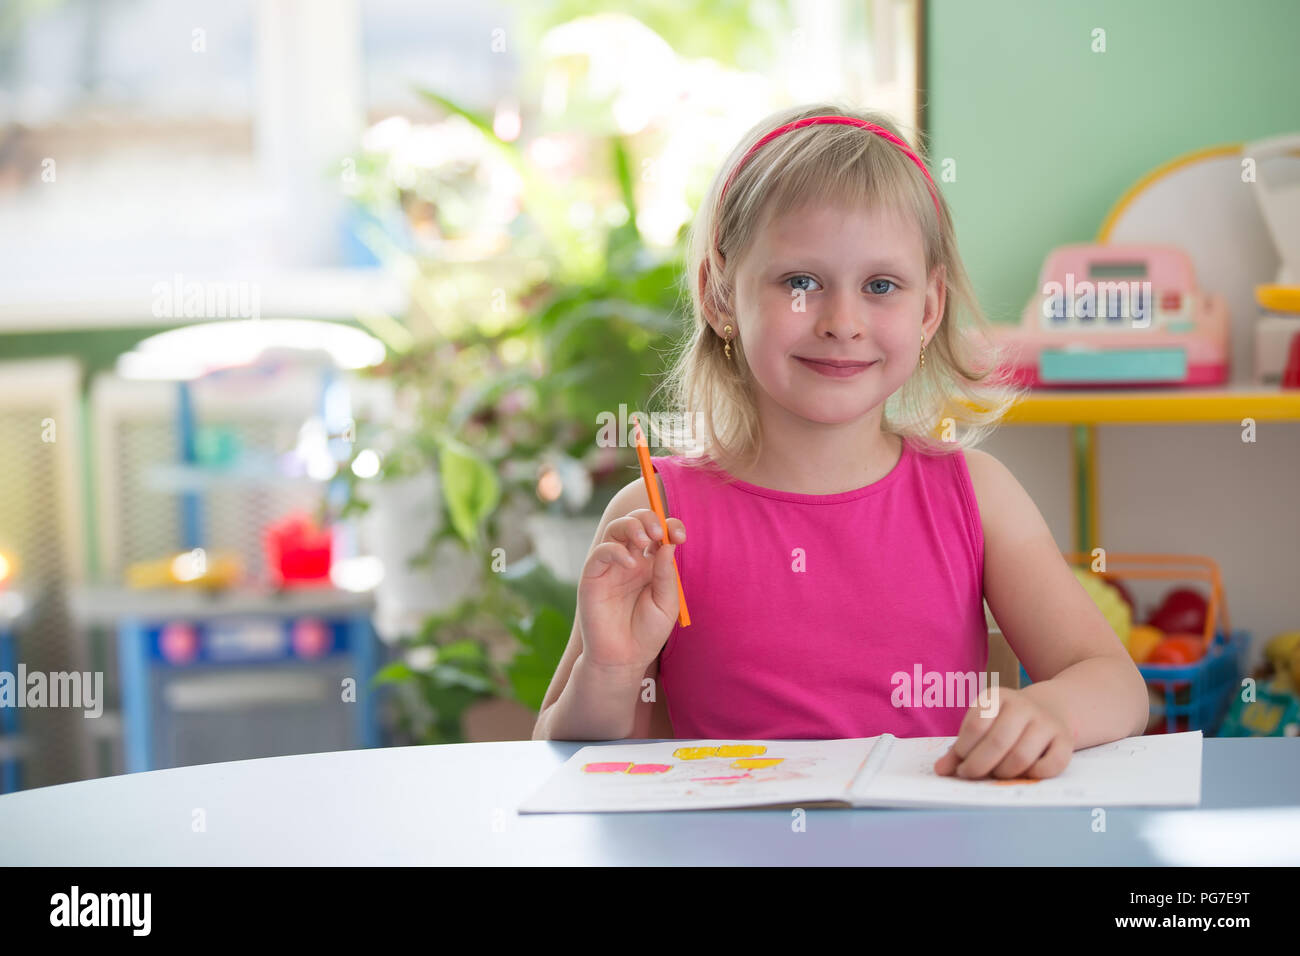 La Bielorussia, Gomel, 29 maggio 2018. Il centro di asilo. Open day.Ritratto di una ragazza in età prescolare.bambino al tavolo con un notebook.La scuola primaria studen Foto Stock